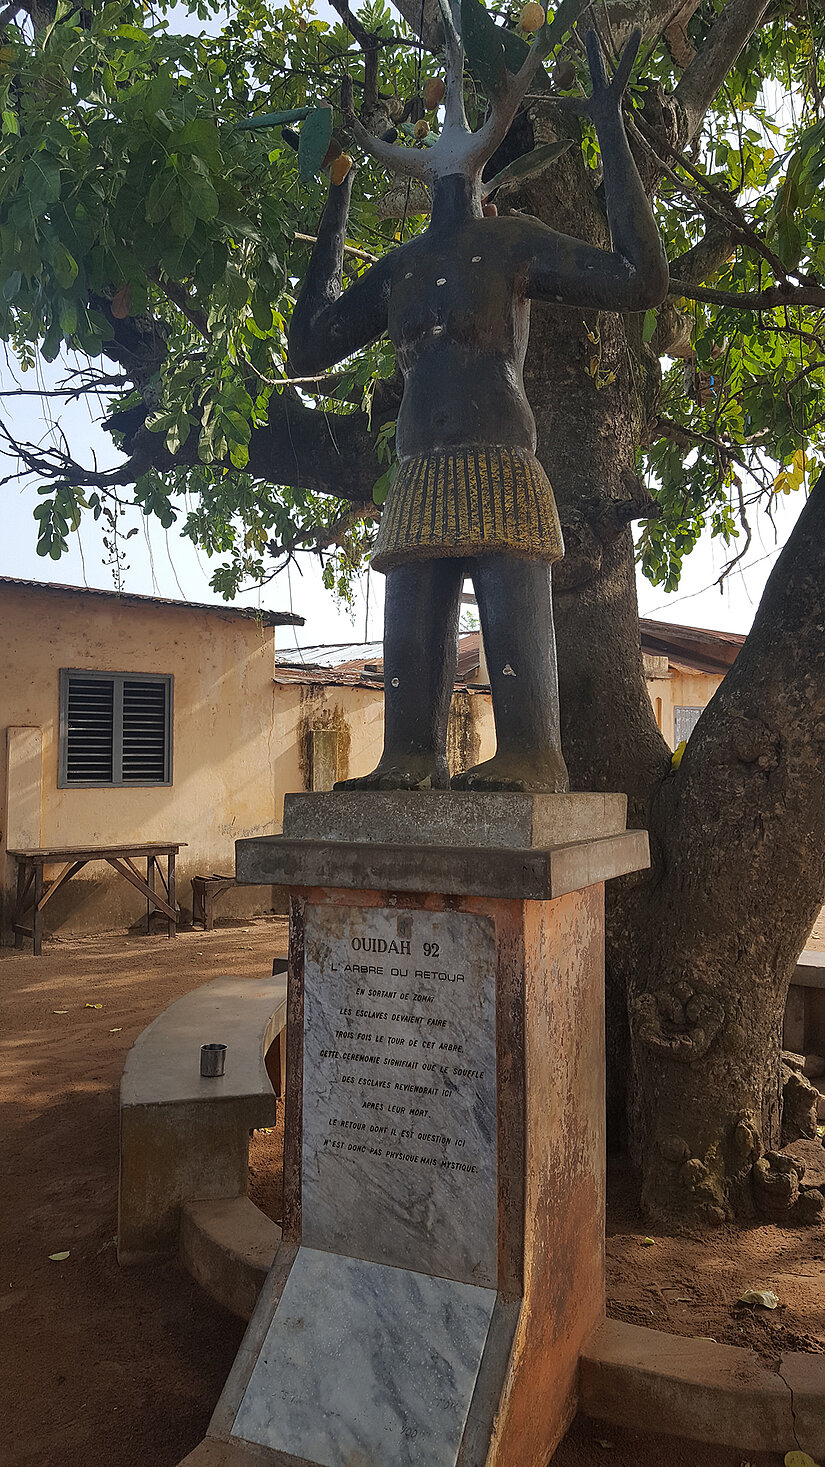 Voodoo-Statue in Togo